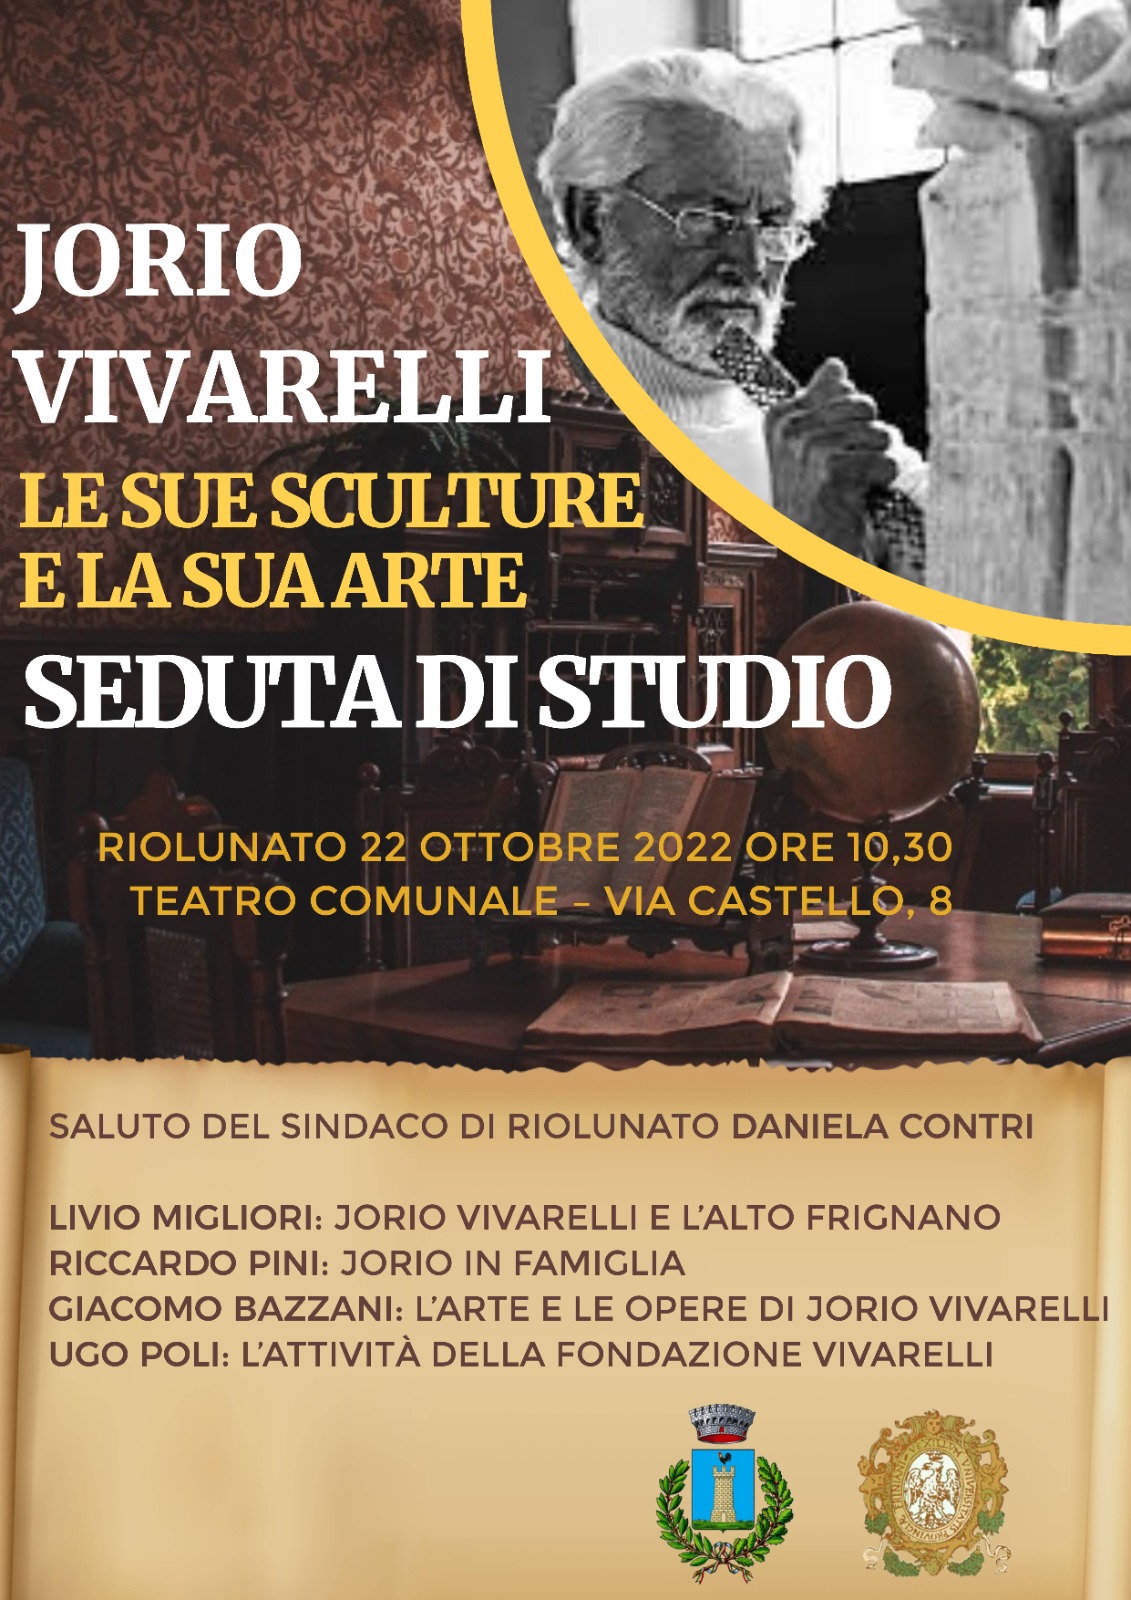 Jorio Vivarelli. Le sue sculture e la sua arte